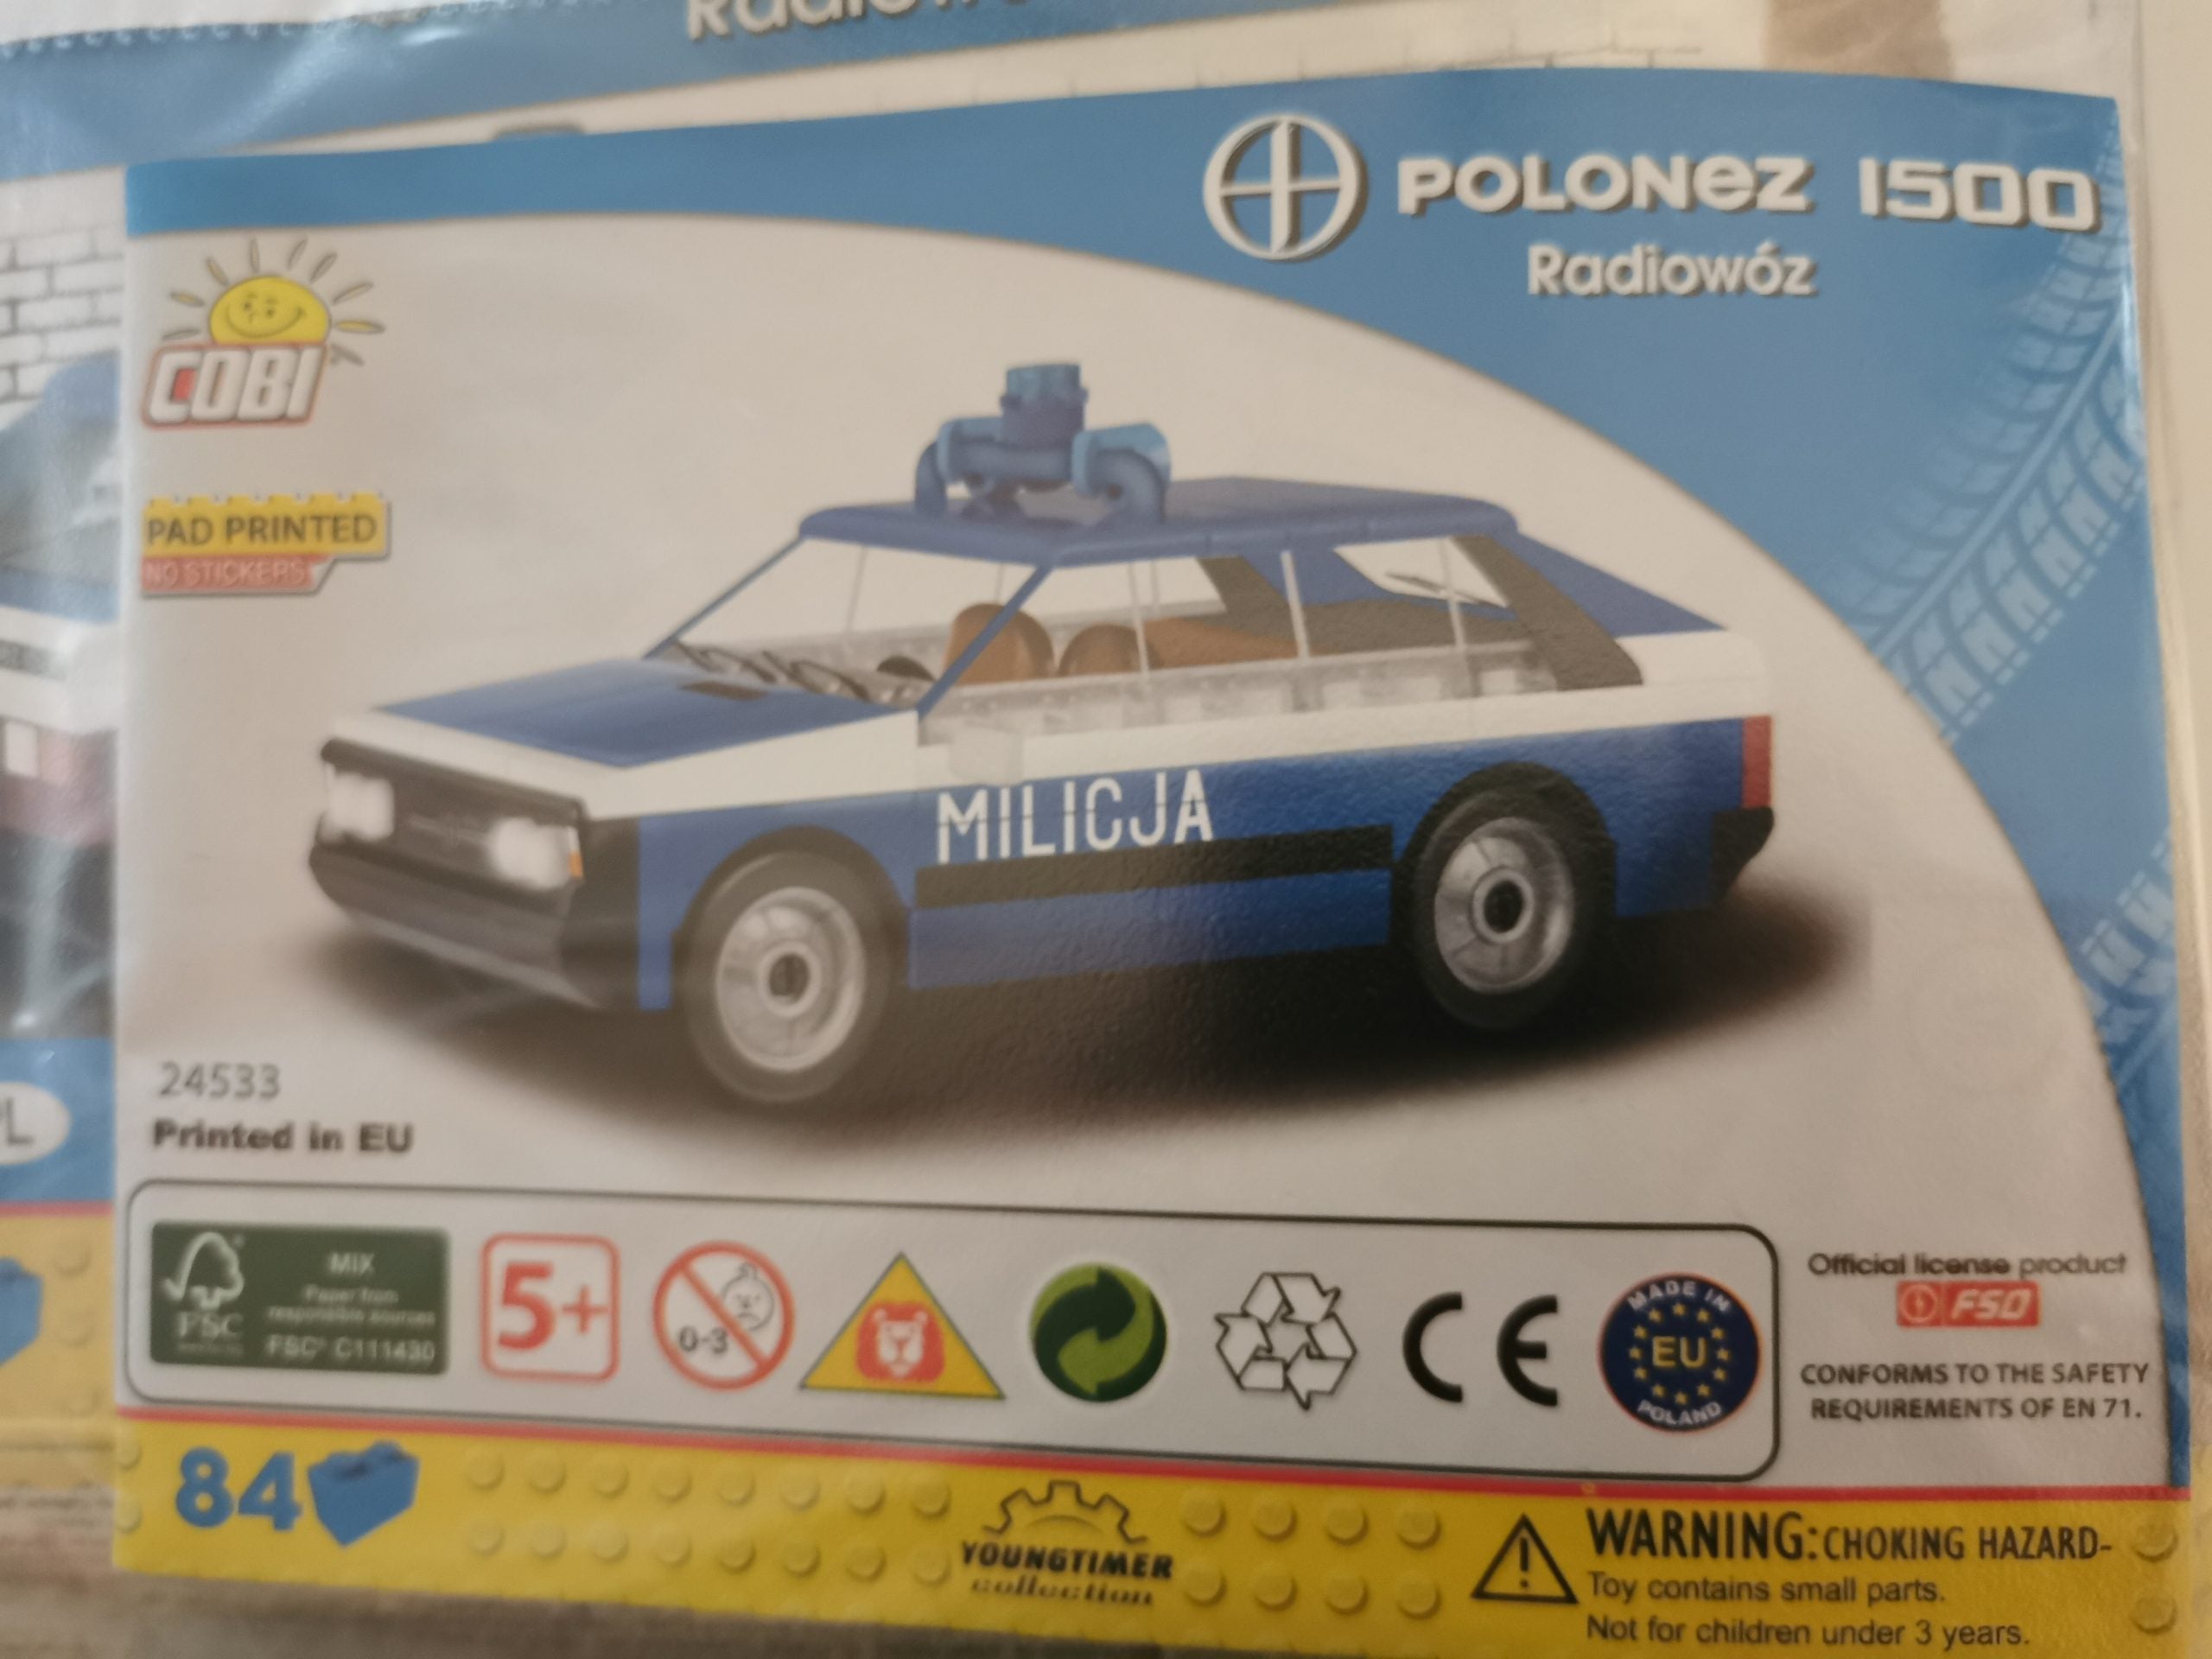 Cobi 24533 Polonez 1500 Radiowoz gebraucht